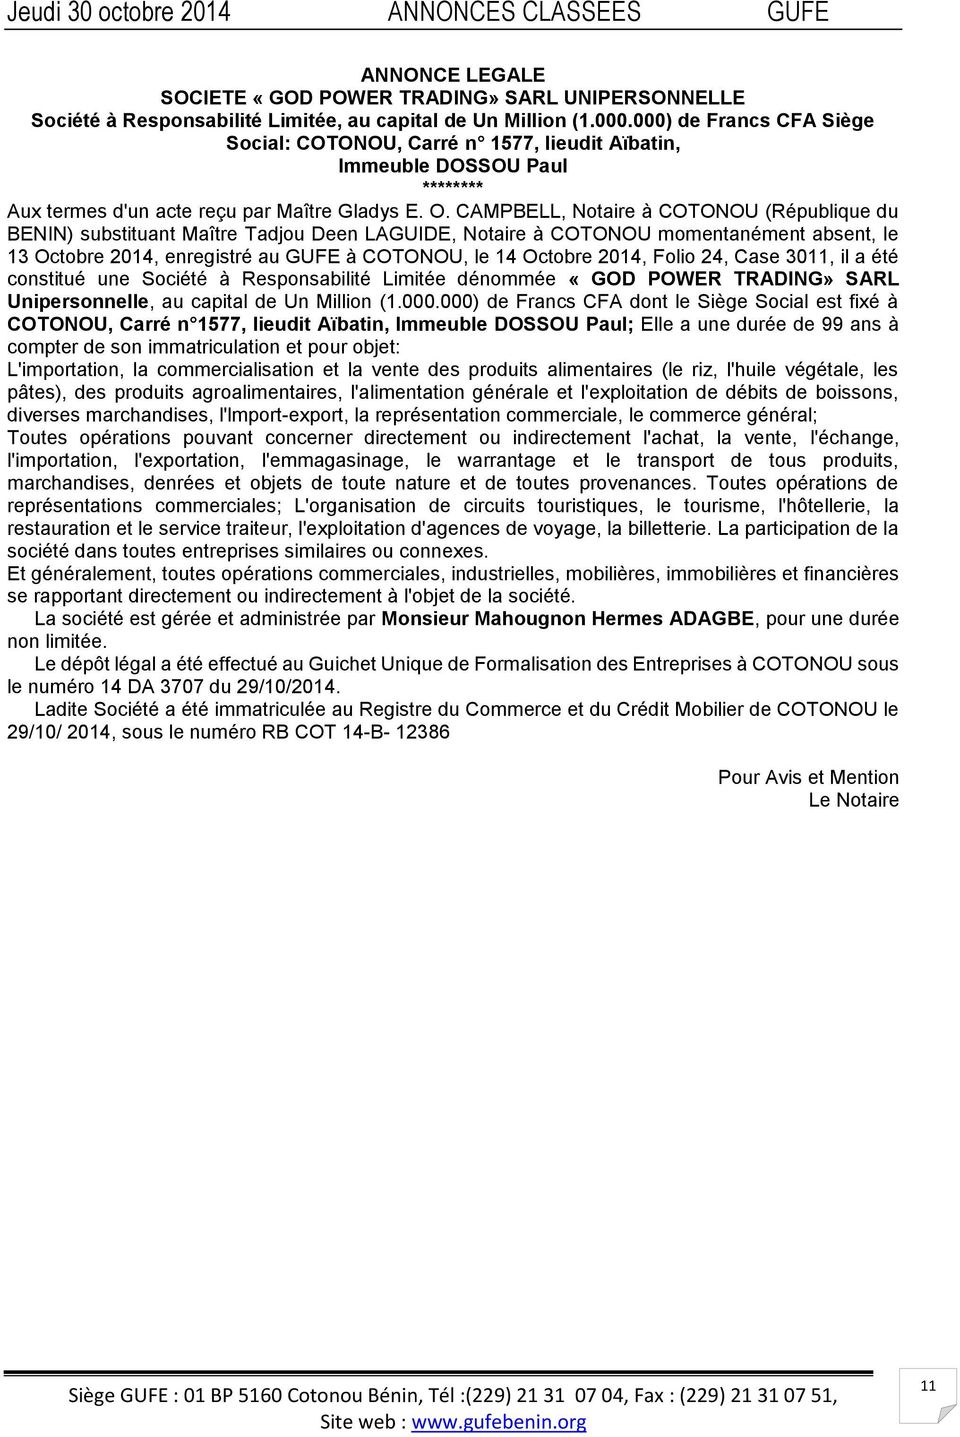 CAMPBELL, Notaire à COTONOU (République du BENIN) substituant Maître Tadjou Deen LAGUIDE, Notaire à COTONOU momentanément absent, le 13 Octobre 2014, enregistré au GUFE à COTONOU, le 14 Octobre 2014,